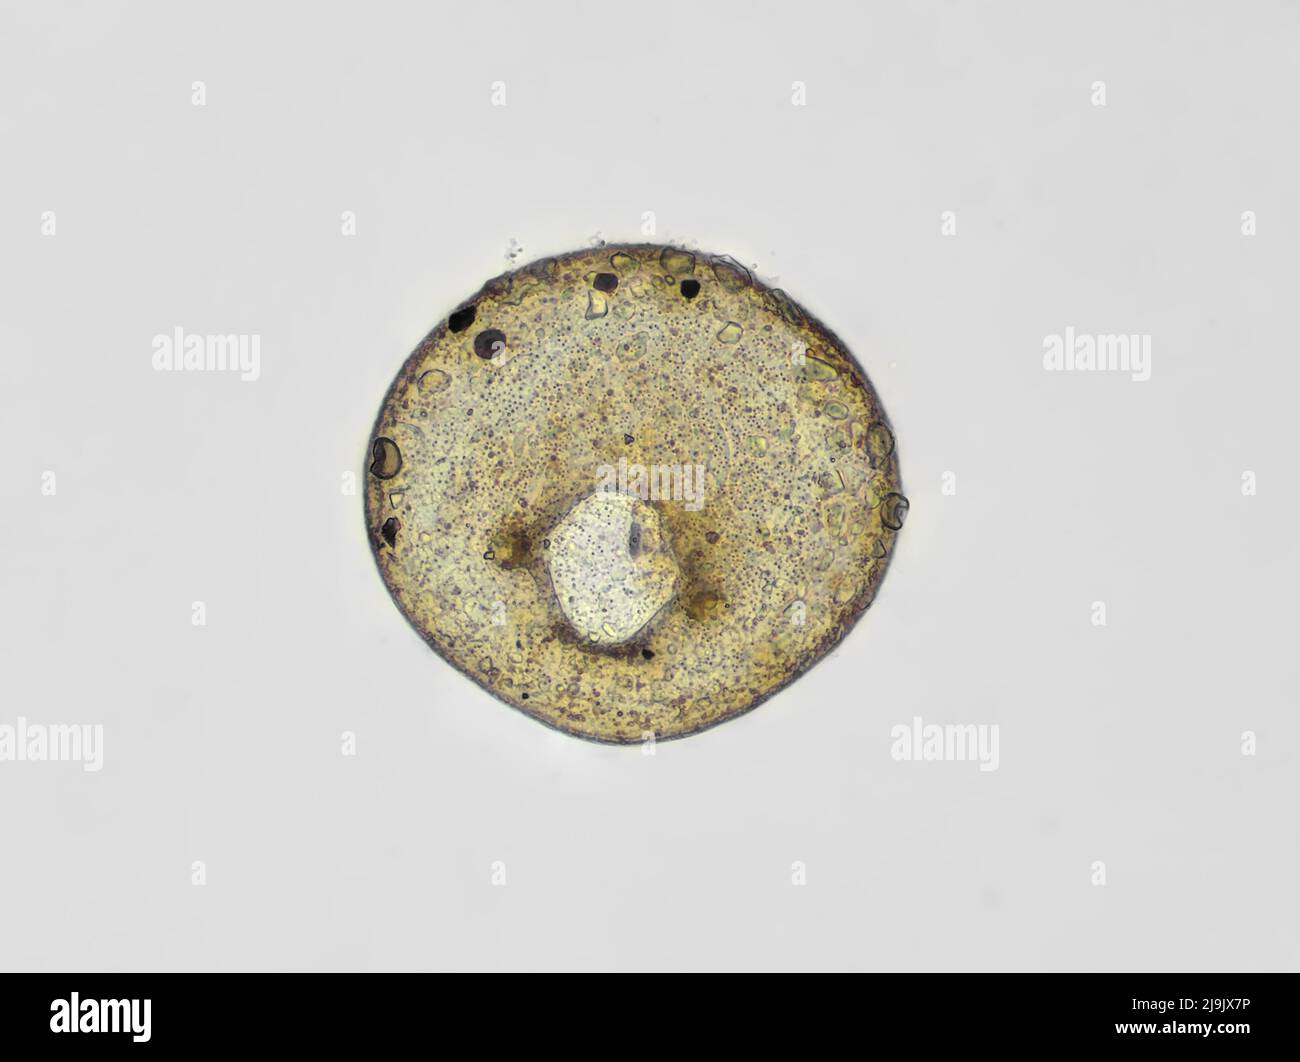 Testate Amöbenschale (Centropyxis sp.) aus einer Gartenbodenprobe, Hellfeld-Mikrograph Stockfoto